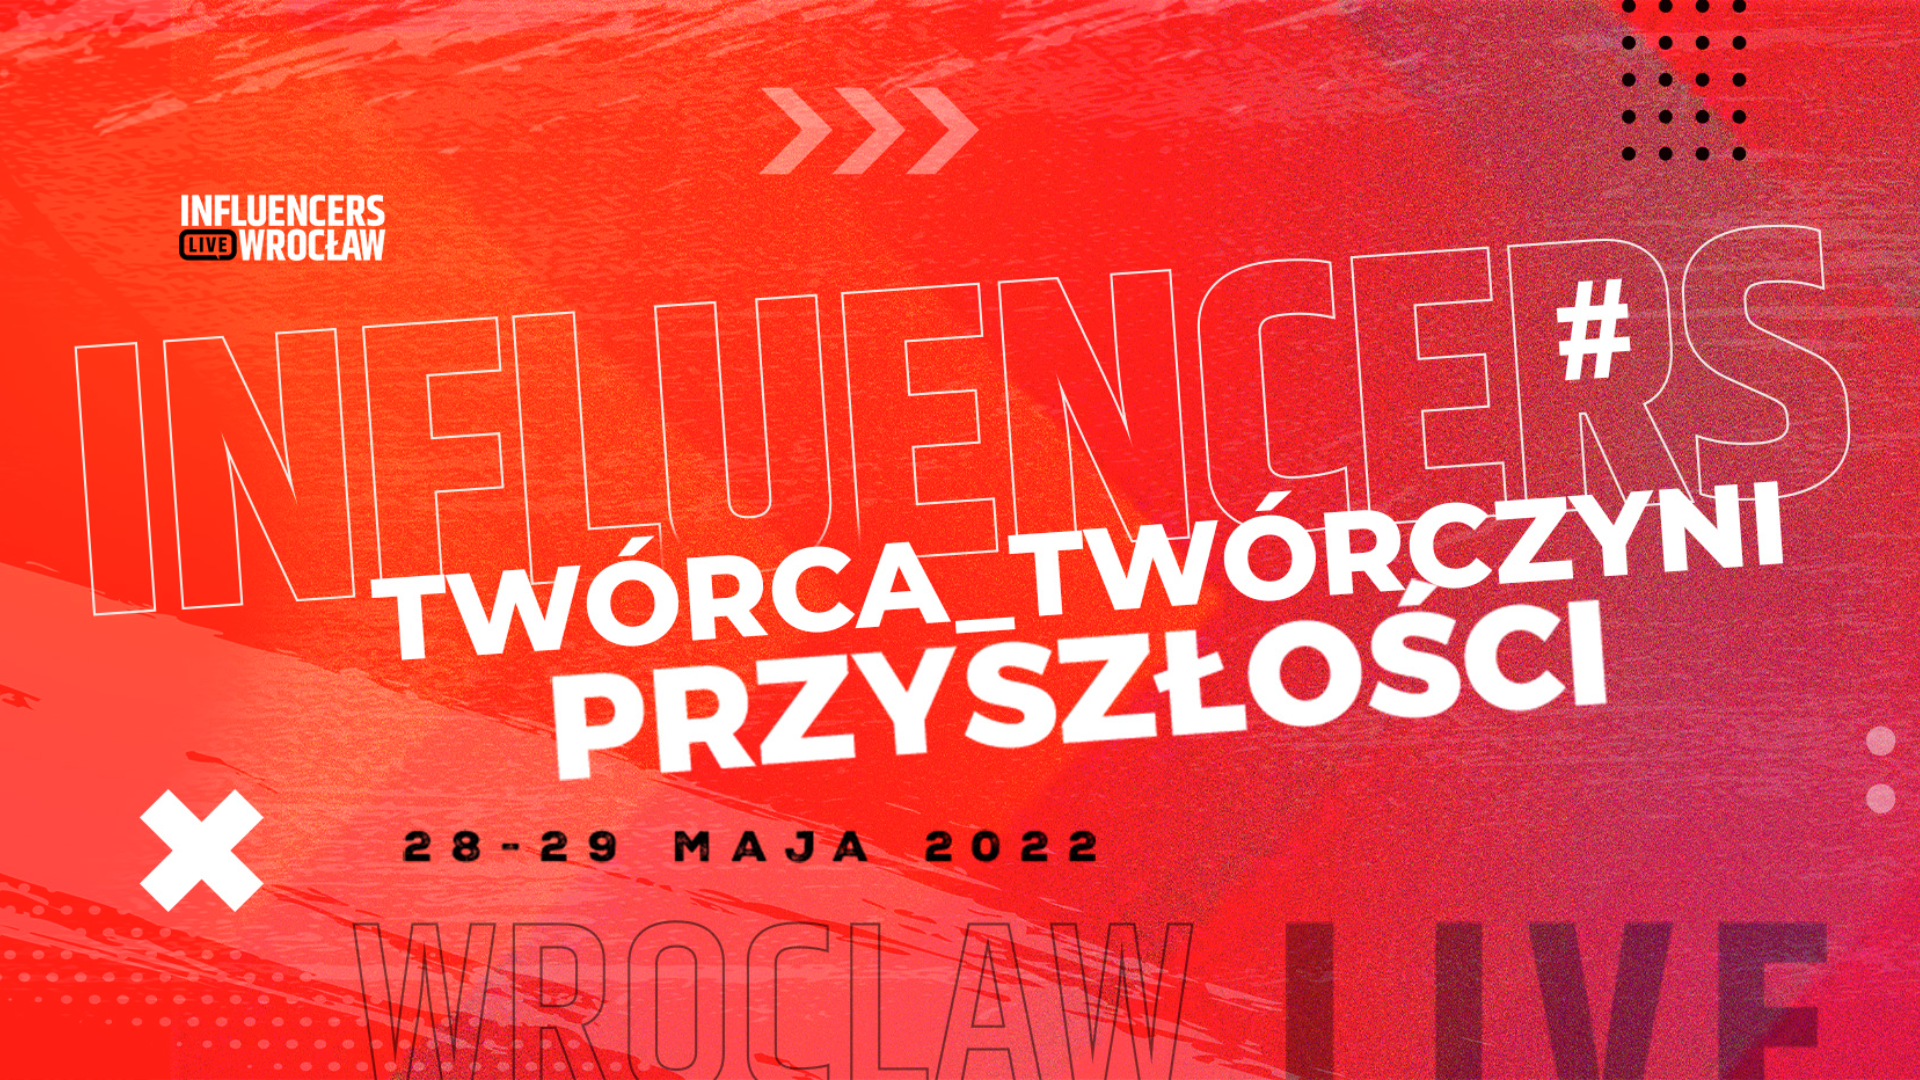 Influencers LIVE Wrocław - wydarzenie